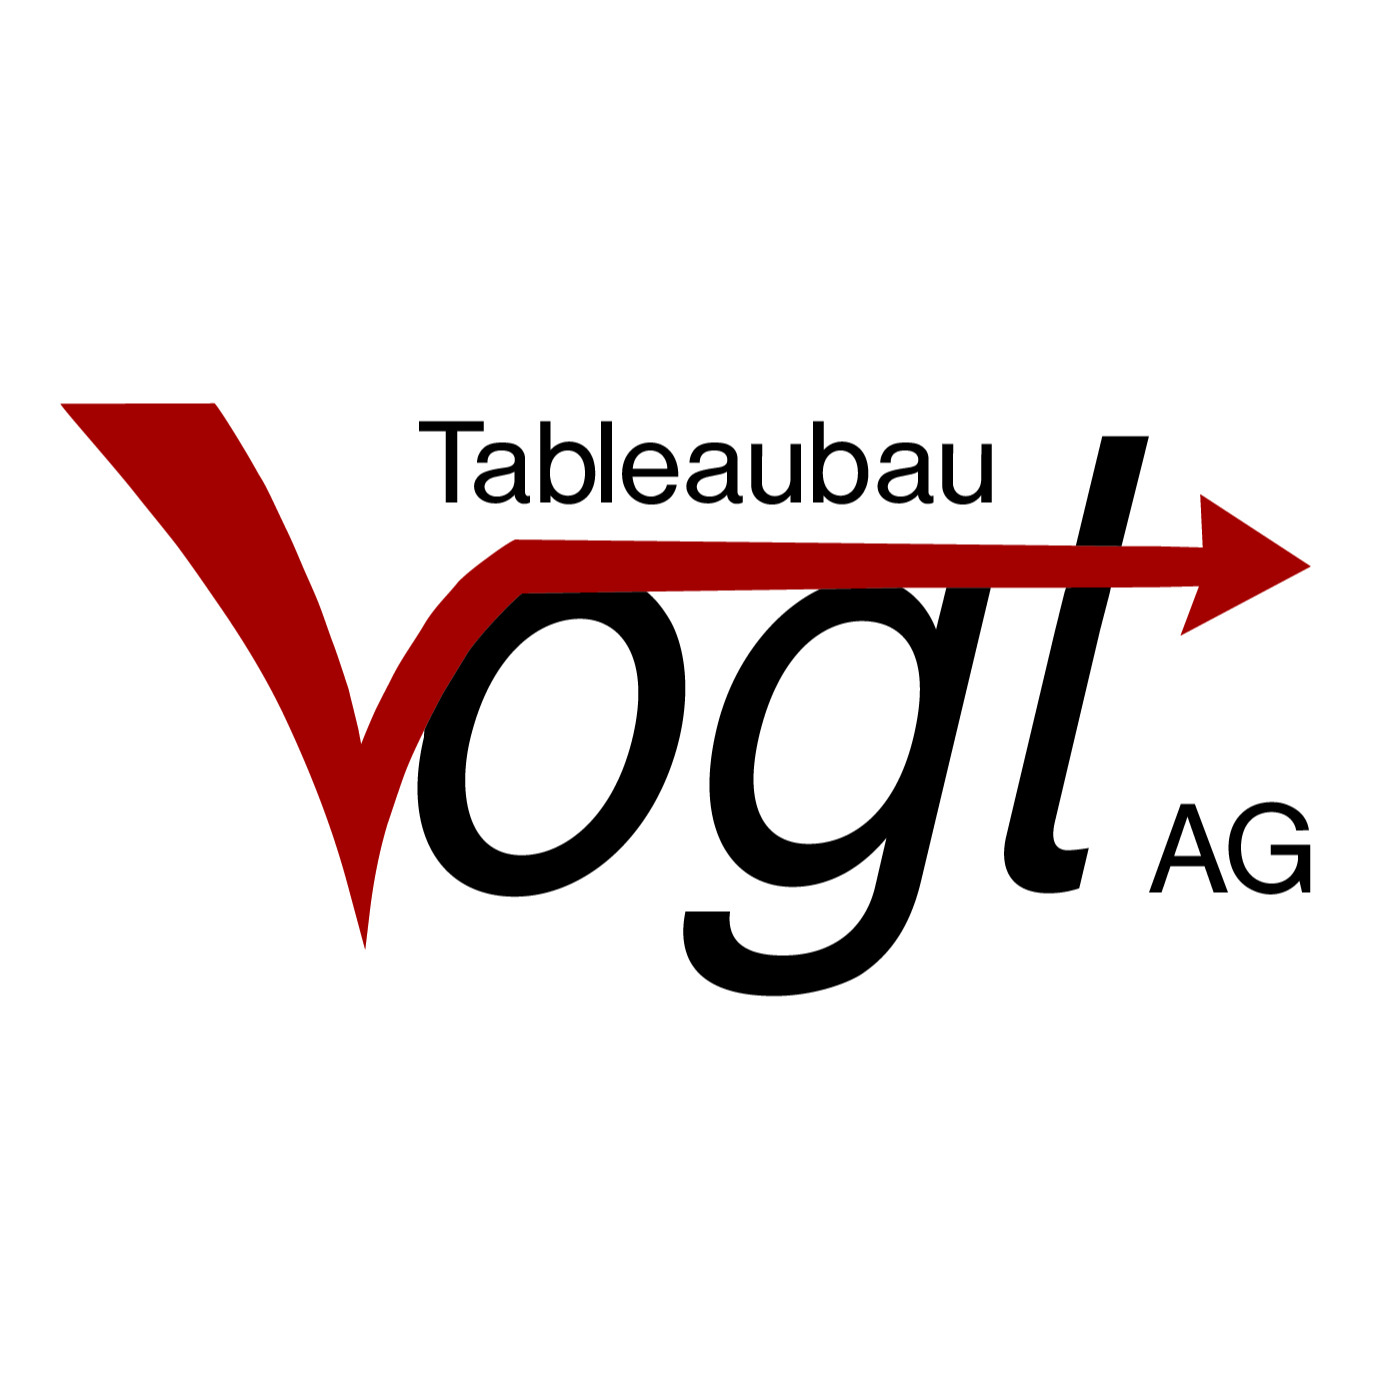 Tableaubau Vogt AG Logo